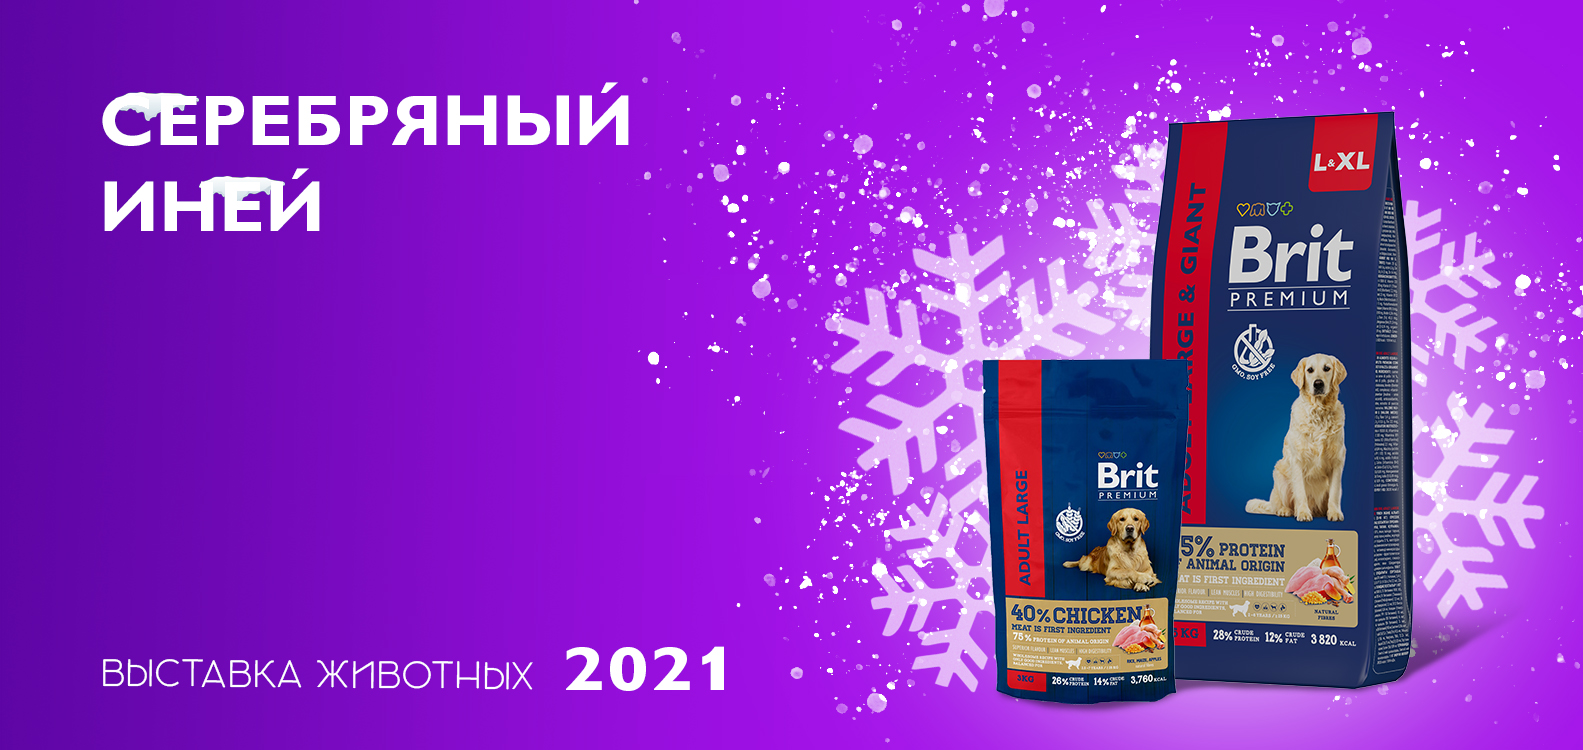 Brit Premium спонсор выставки в Нижнем Новгороде